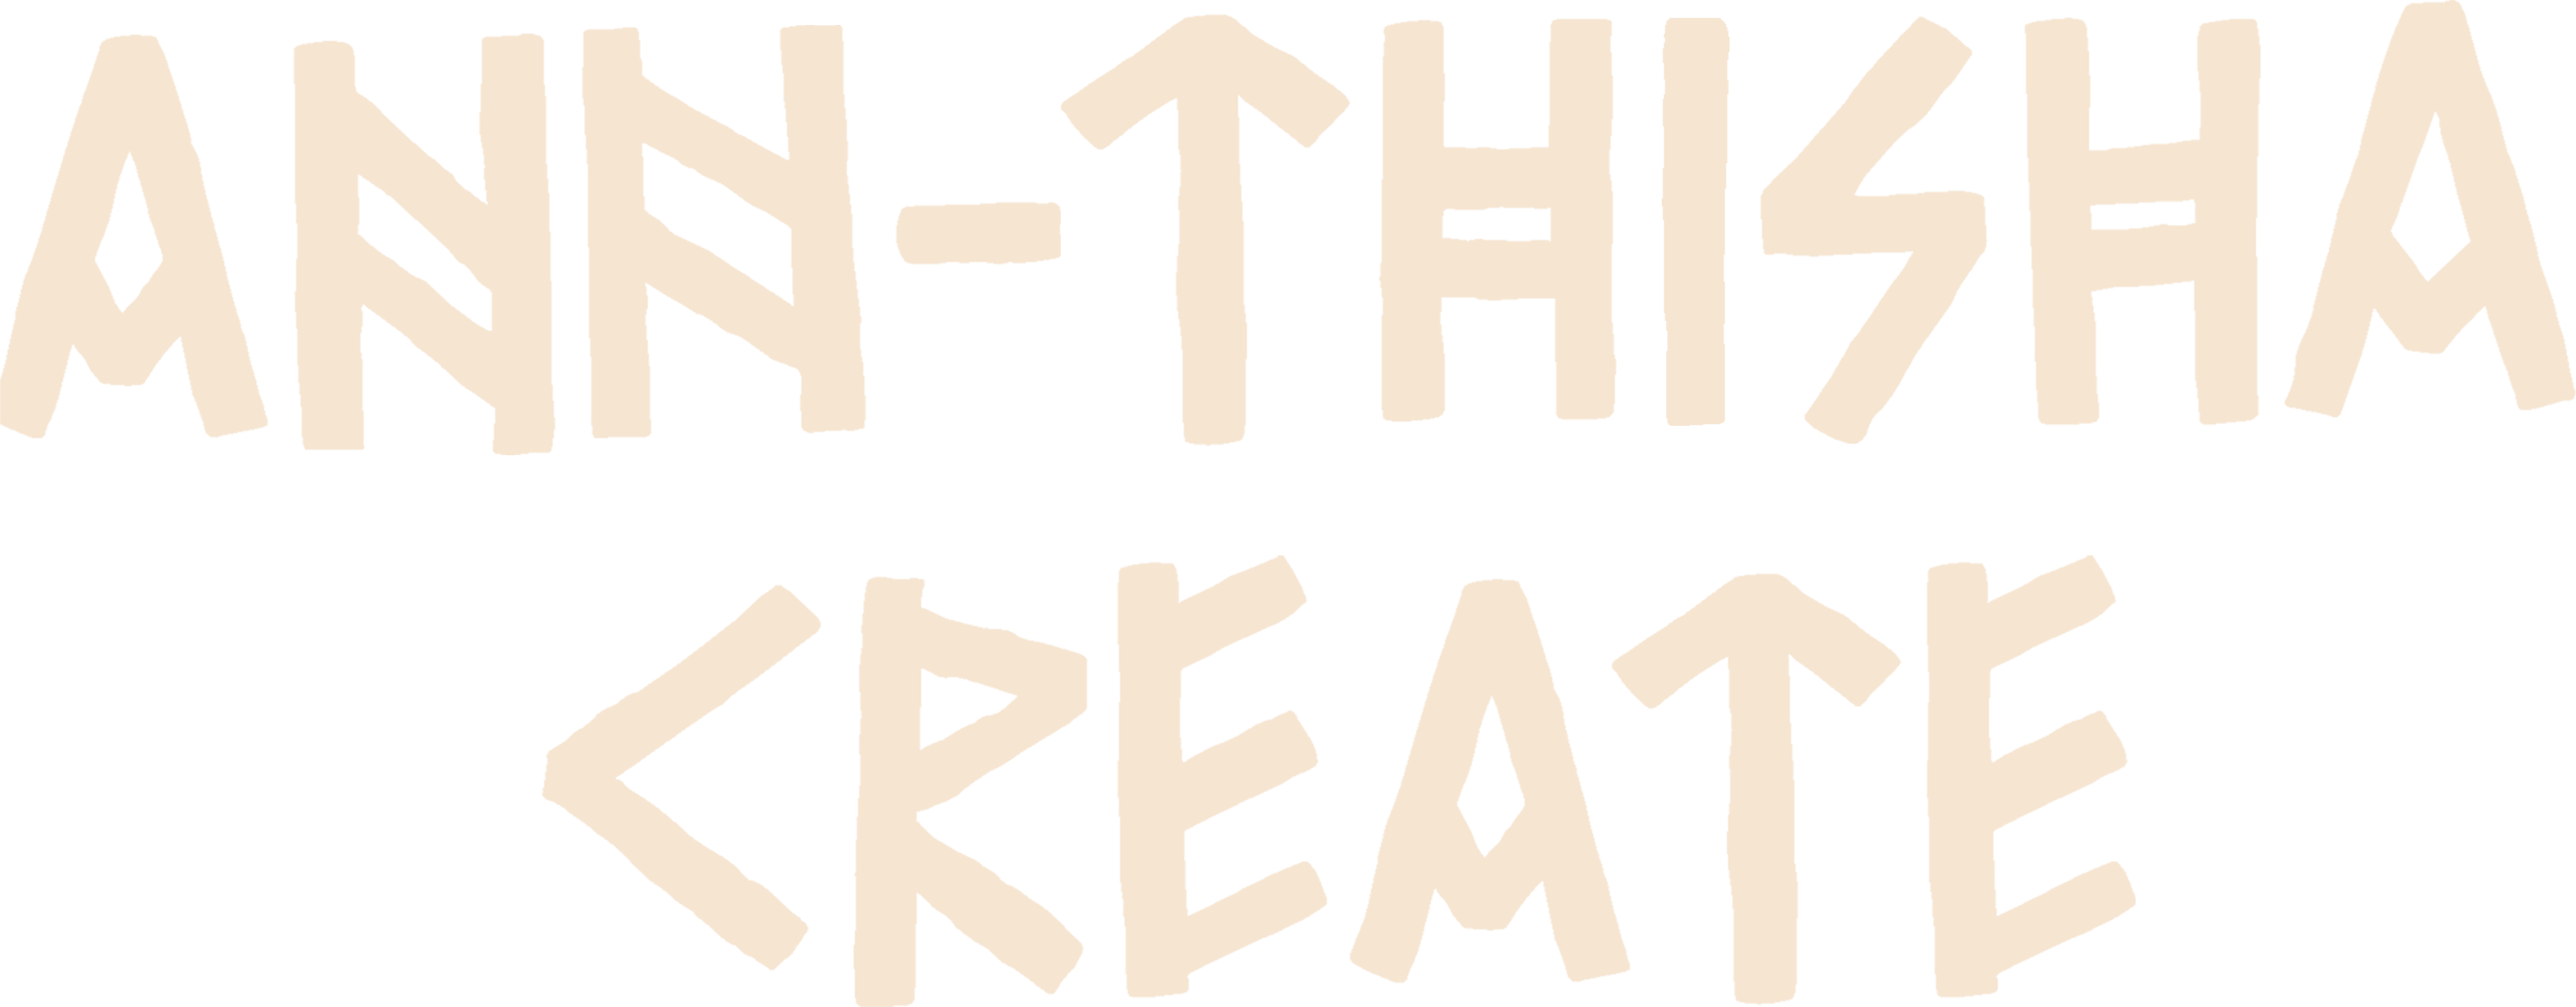 Ann-Thisha Create